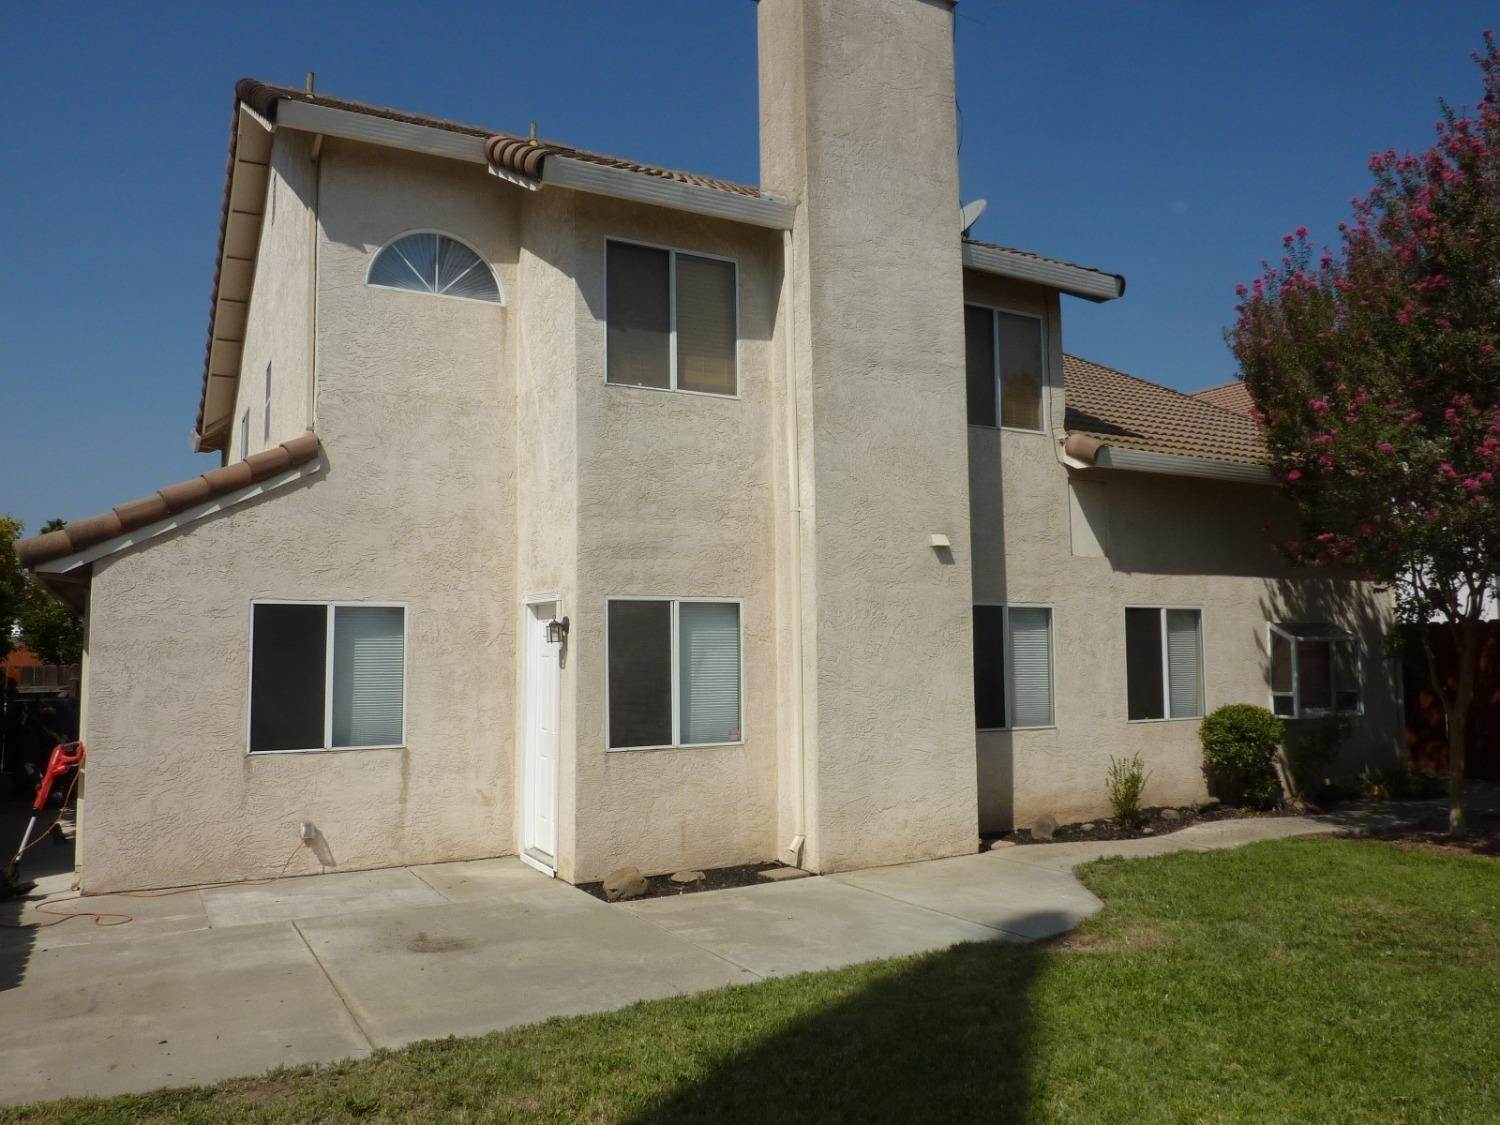 2. Single Family Homes for Active at 4312 San Vito Drive Salida, California 95368 United States